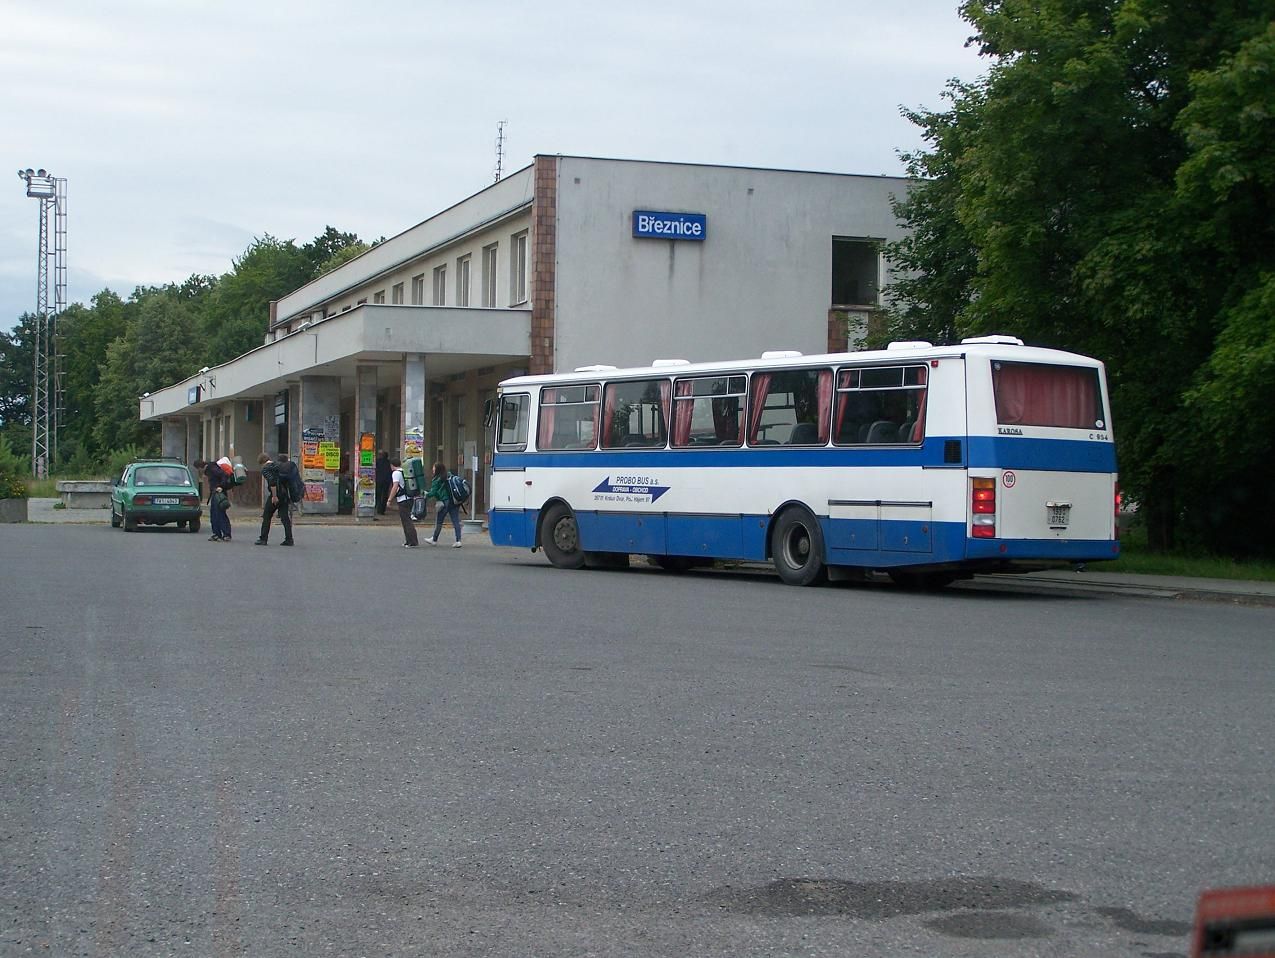 Nhradn doprava v Beznici, autobus na obratu os. 7942 / 7903 - Beznice - 20.7.2012.